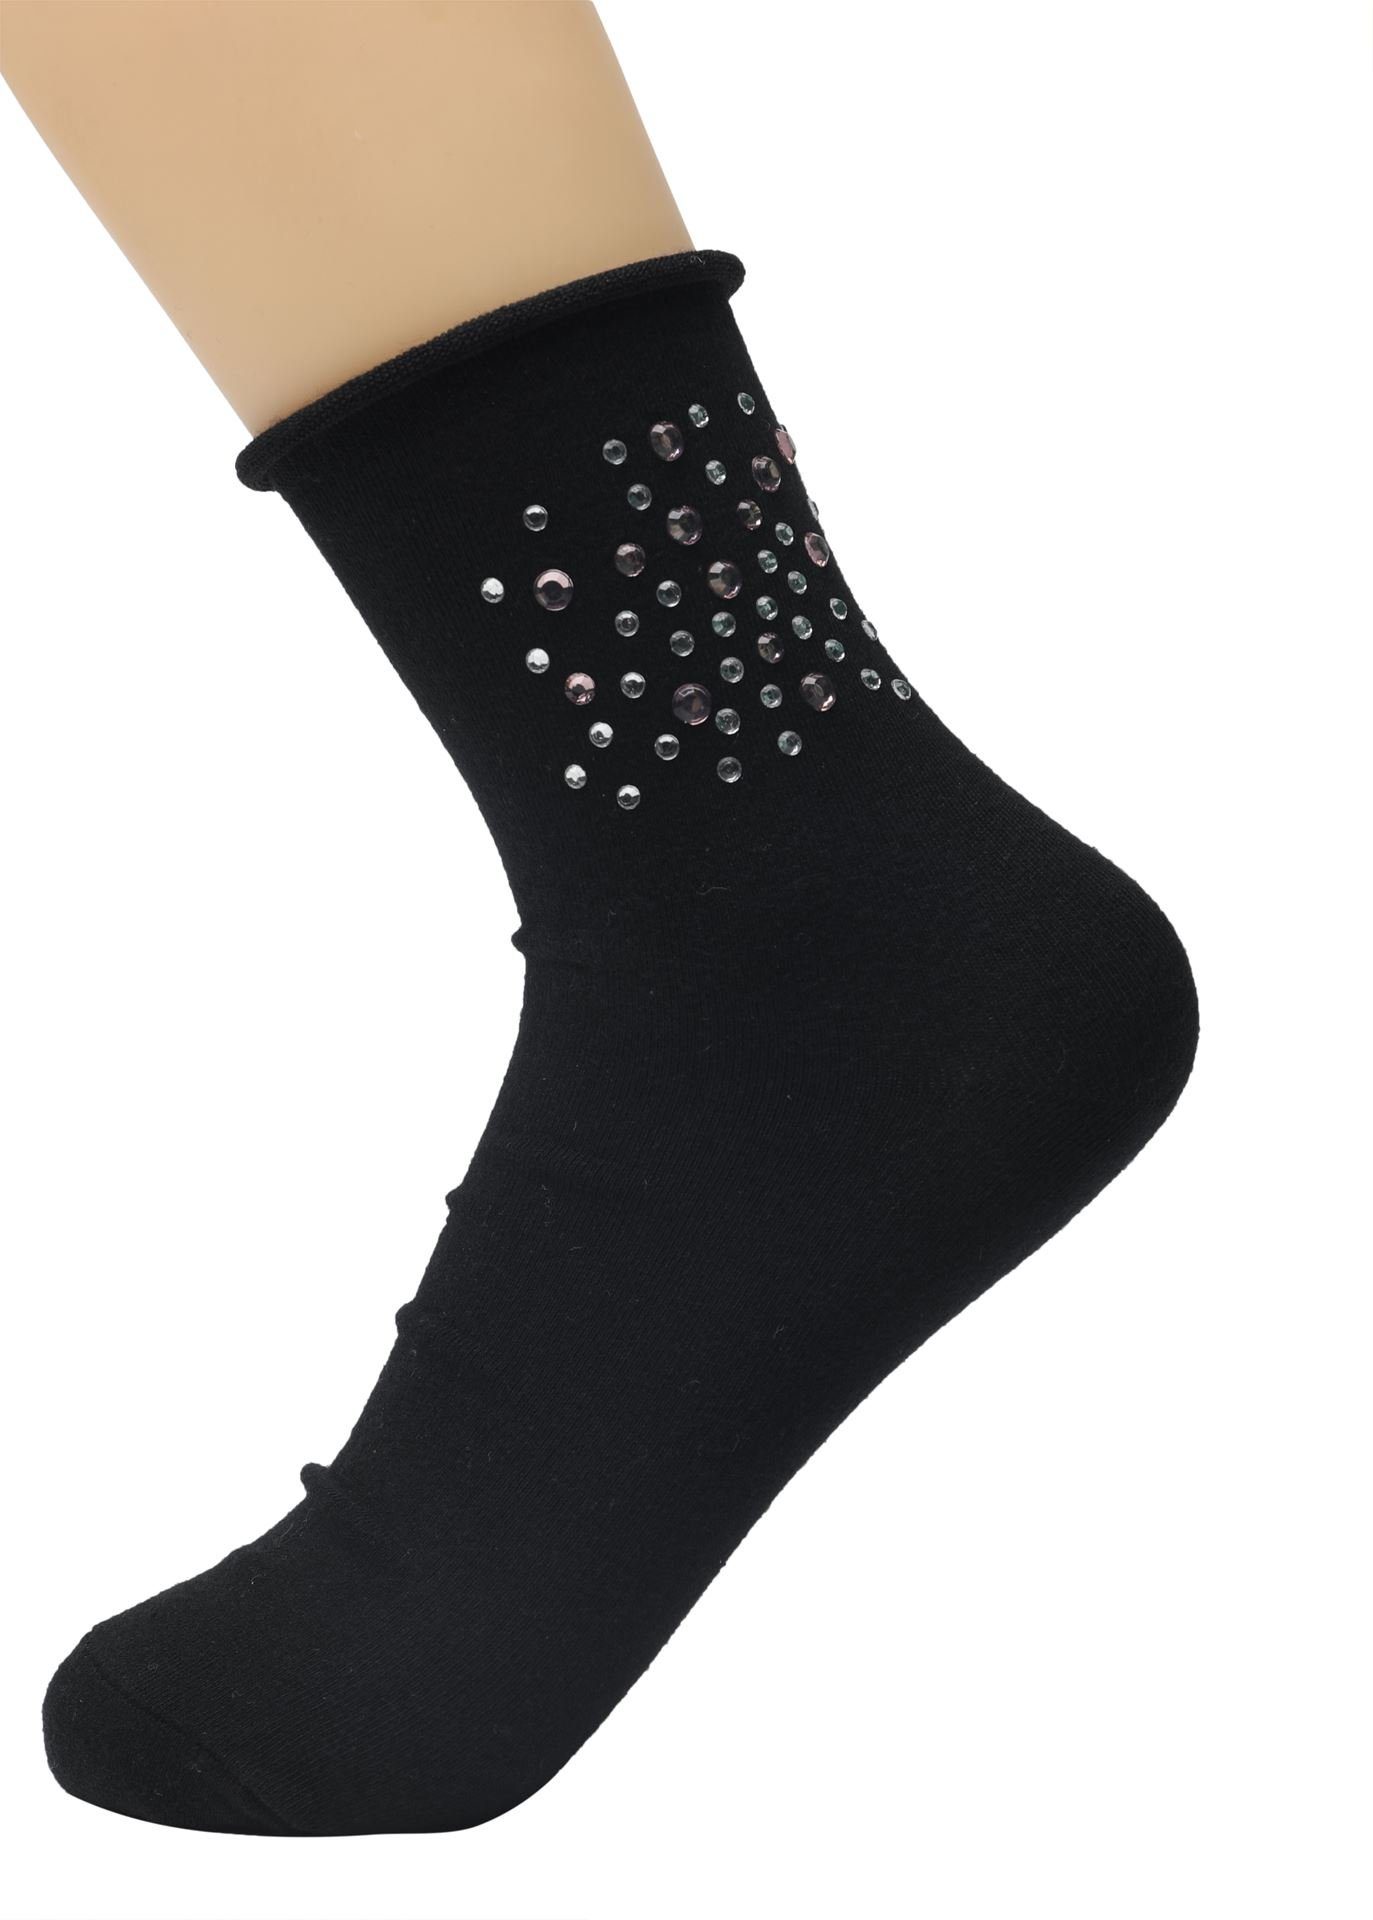 Frauen Paar 1 Socken 1 Lycille schwarz eleganter Baumwollsocken mit Glitzer für Modell 36/41